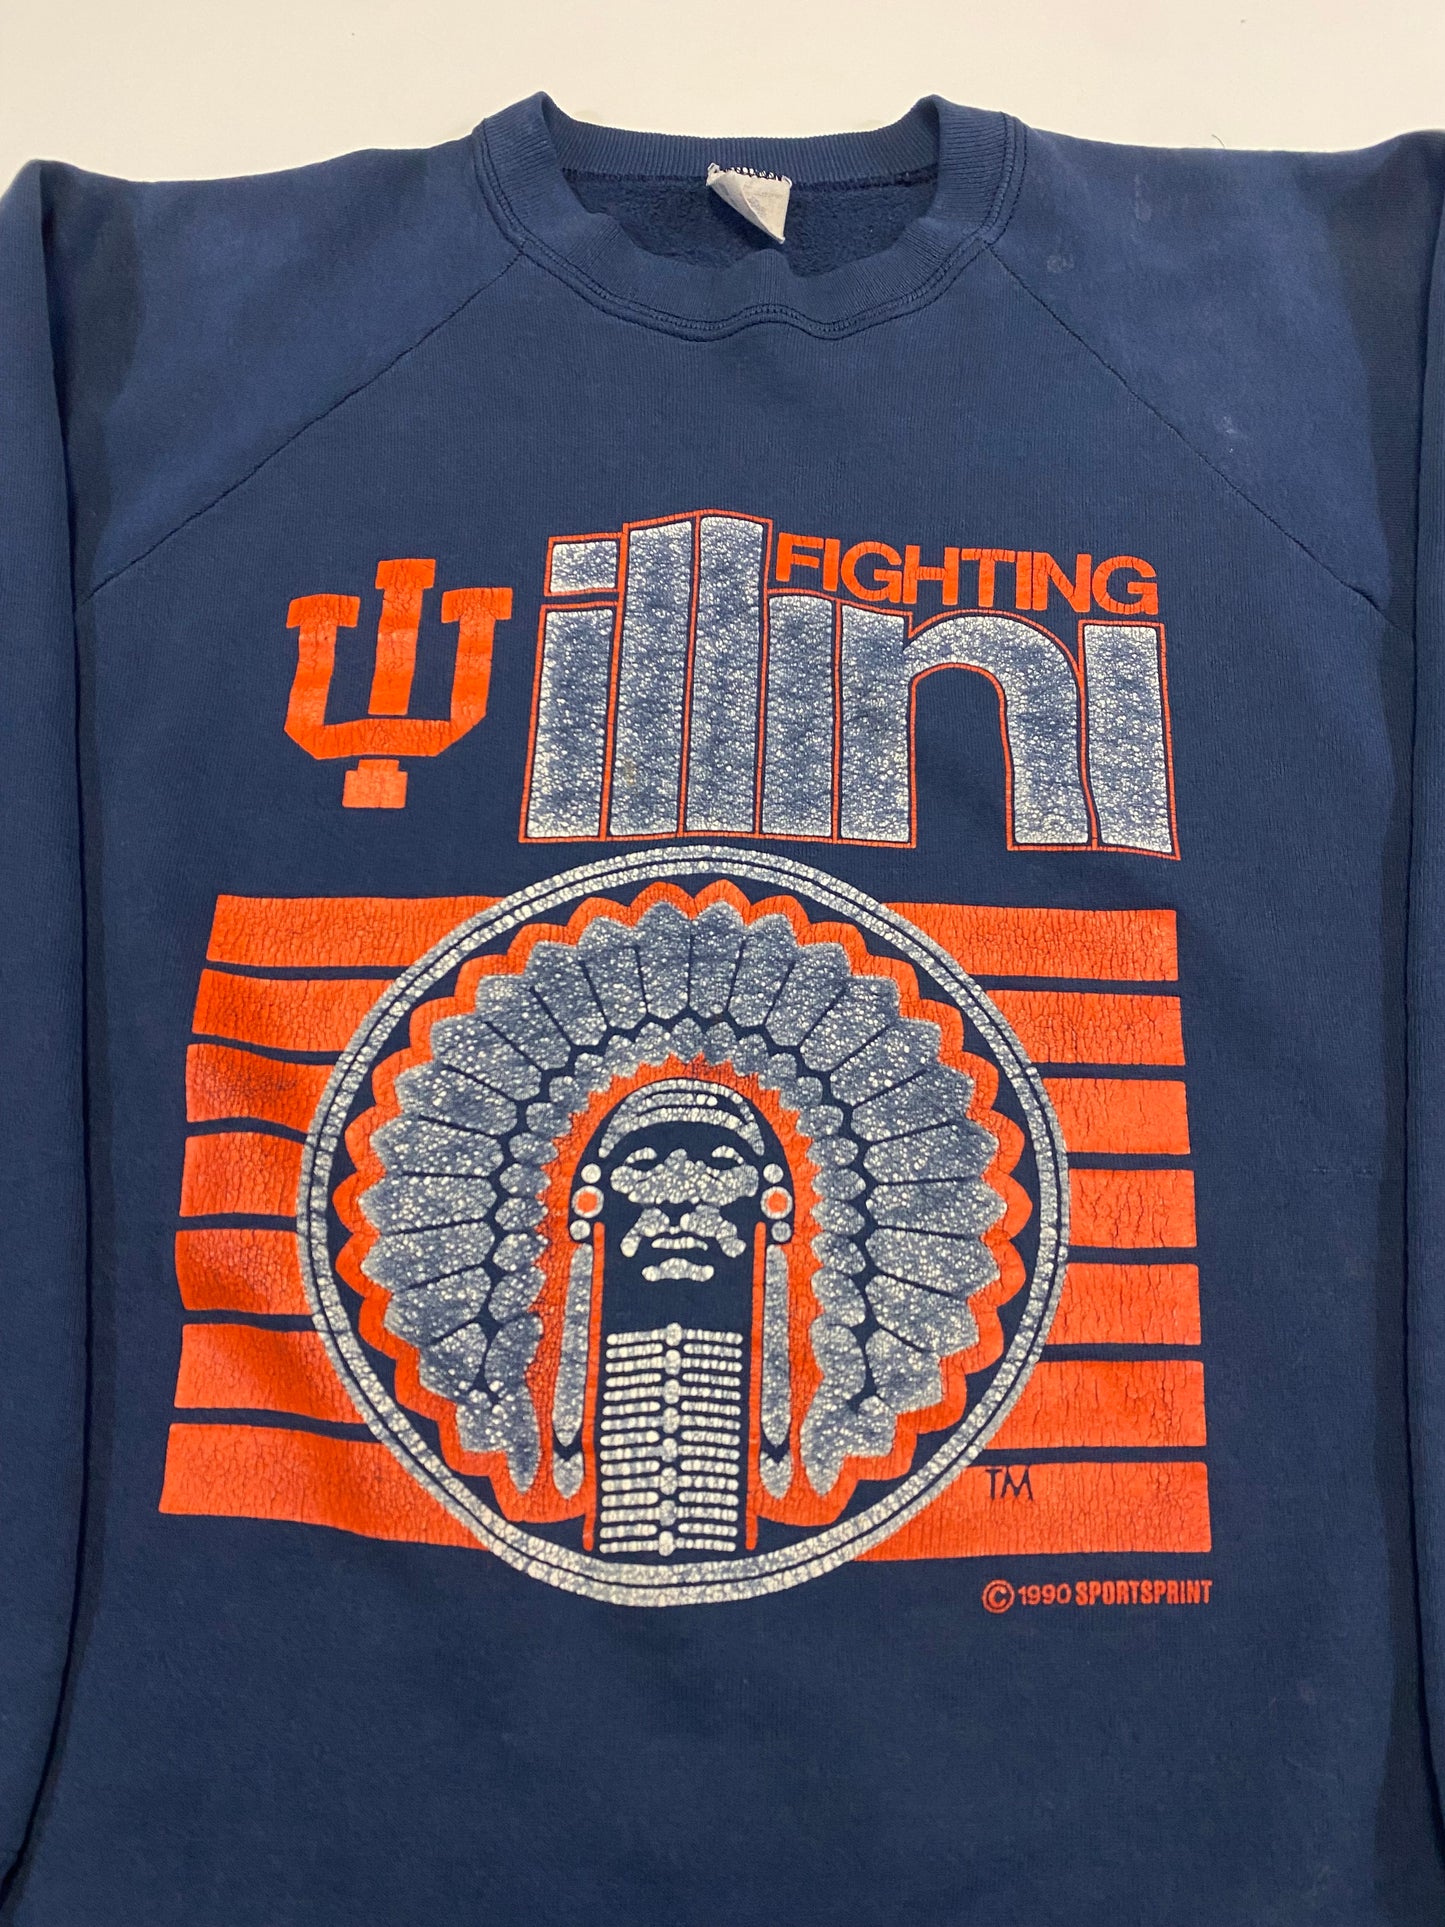 1990 University of Illinois Fighting Illini Sweatshirt XL